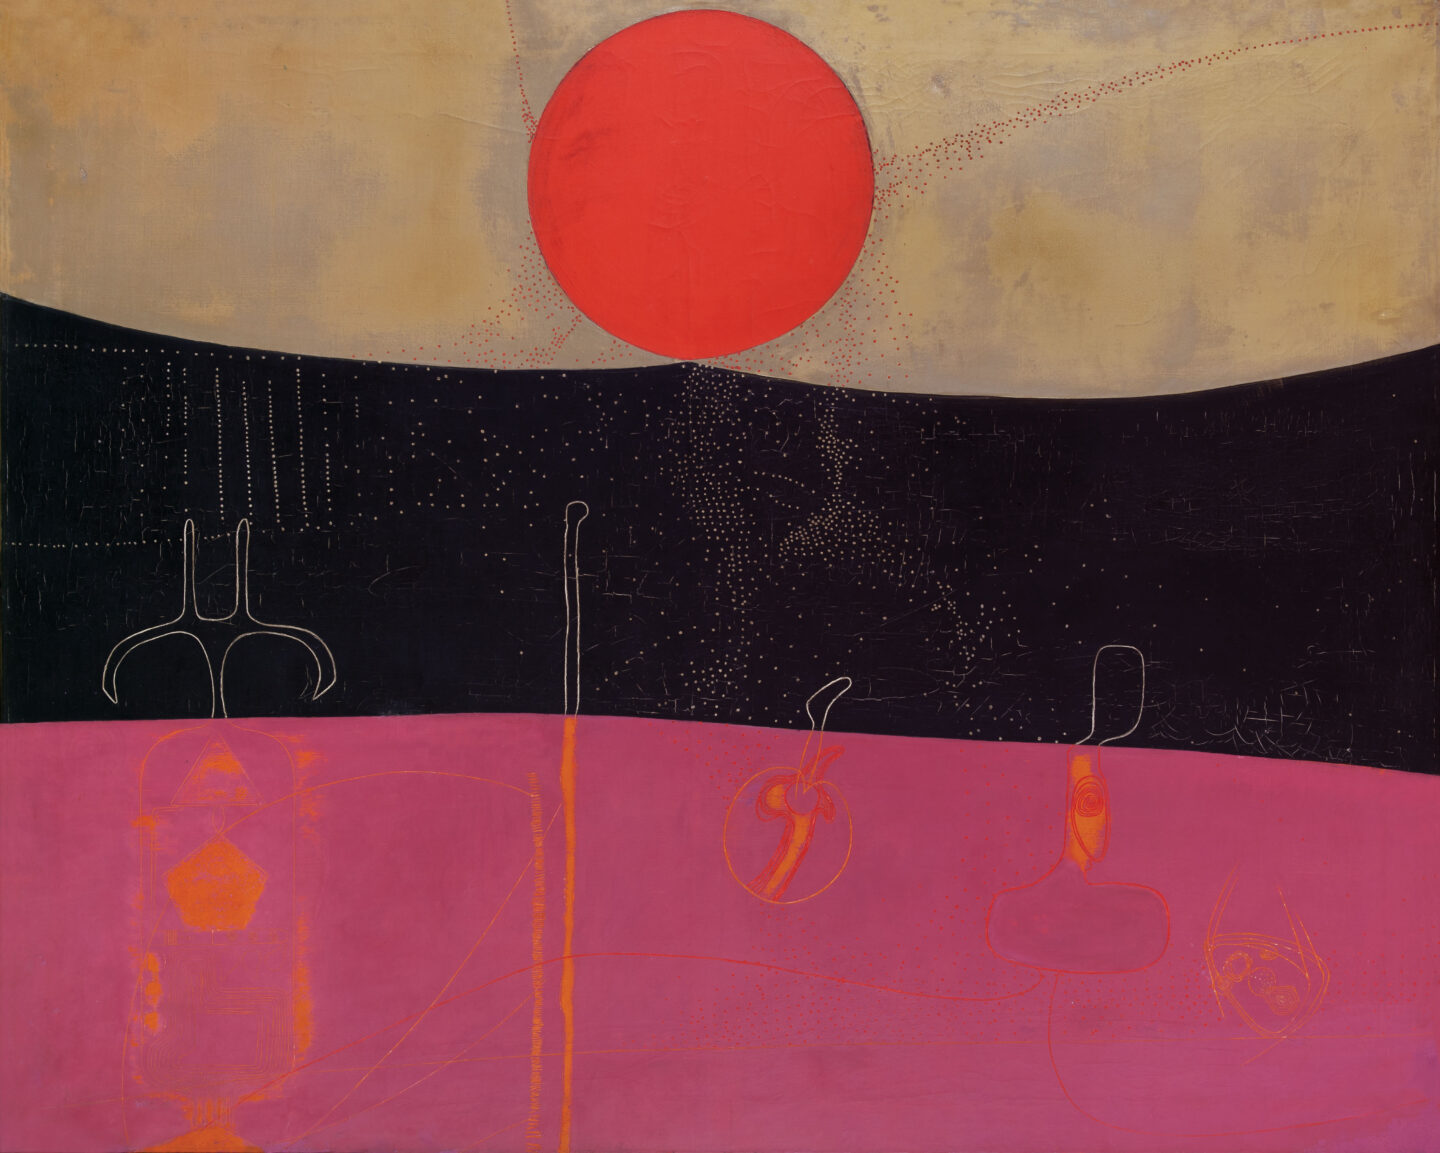 Pintura abstrata em óleo de Elda Cerrato que possui um terço superior da tela em bege com um círculo vermelho ao centro, um terço em preto e o terço abaixo em rosa, sobre os dois terços inferiores, há pequenas imagens que remetem à produção de energia.